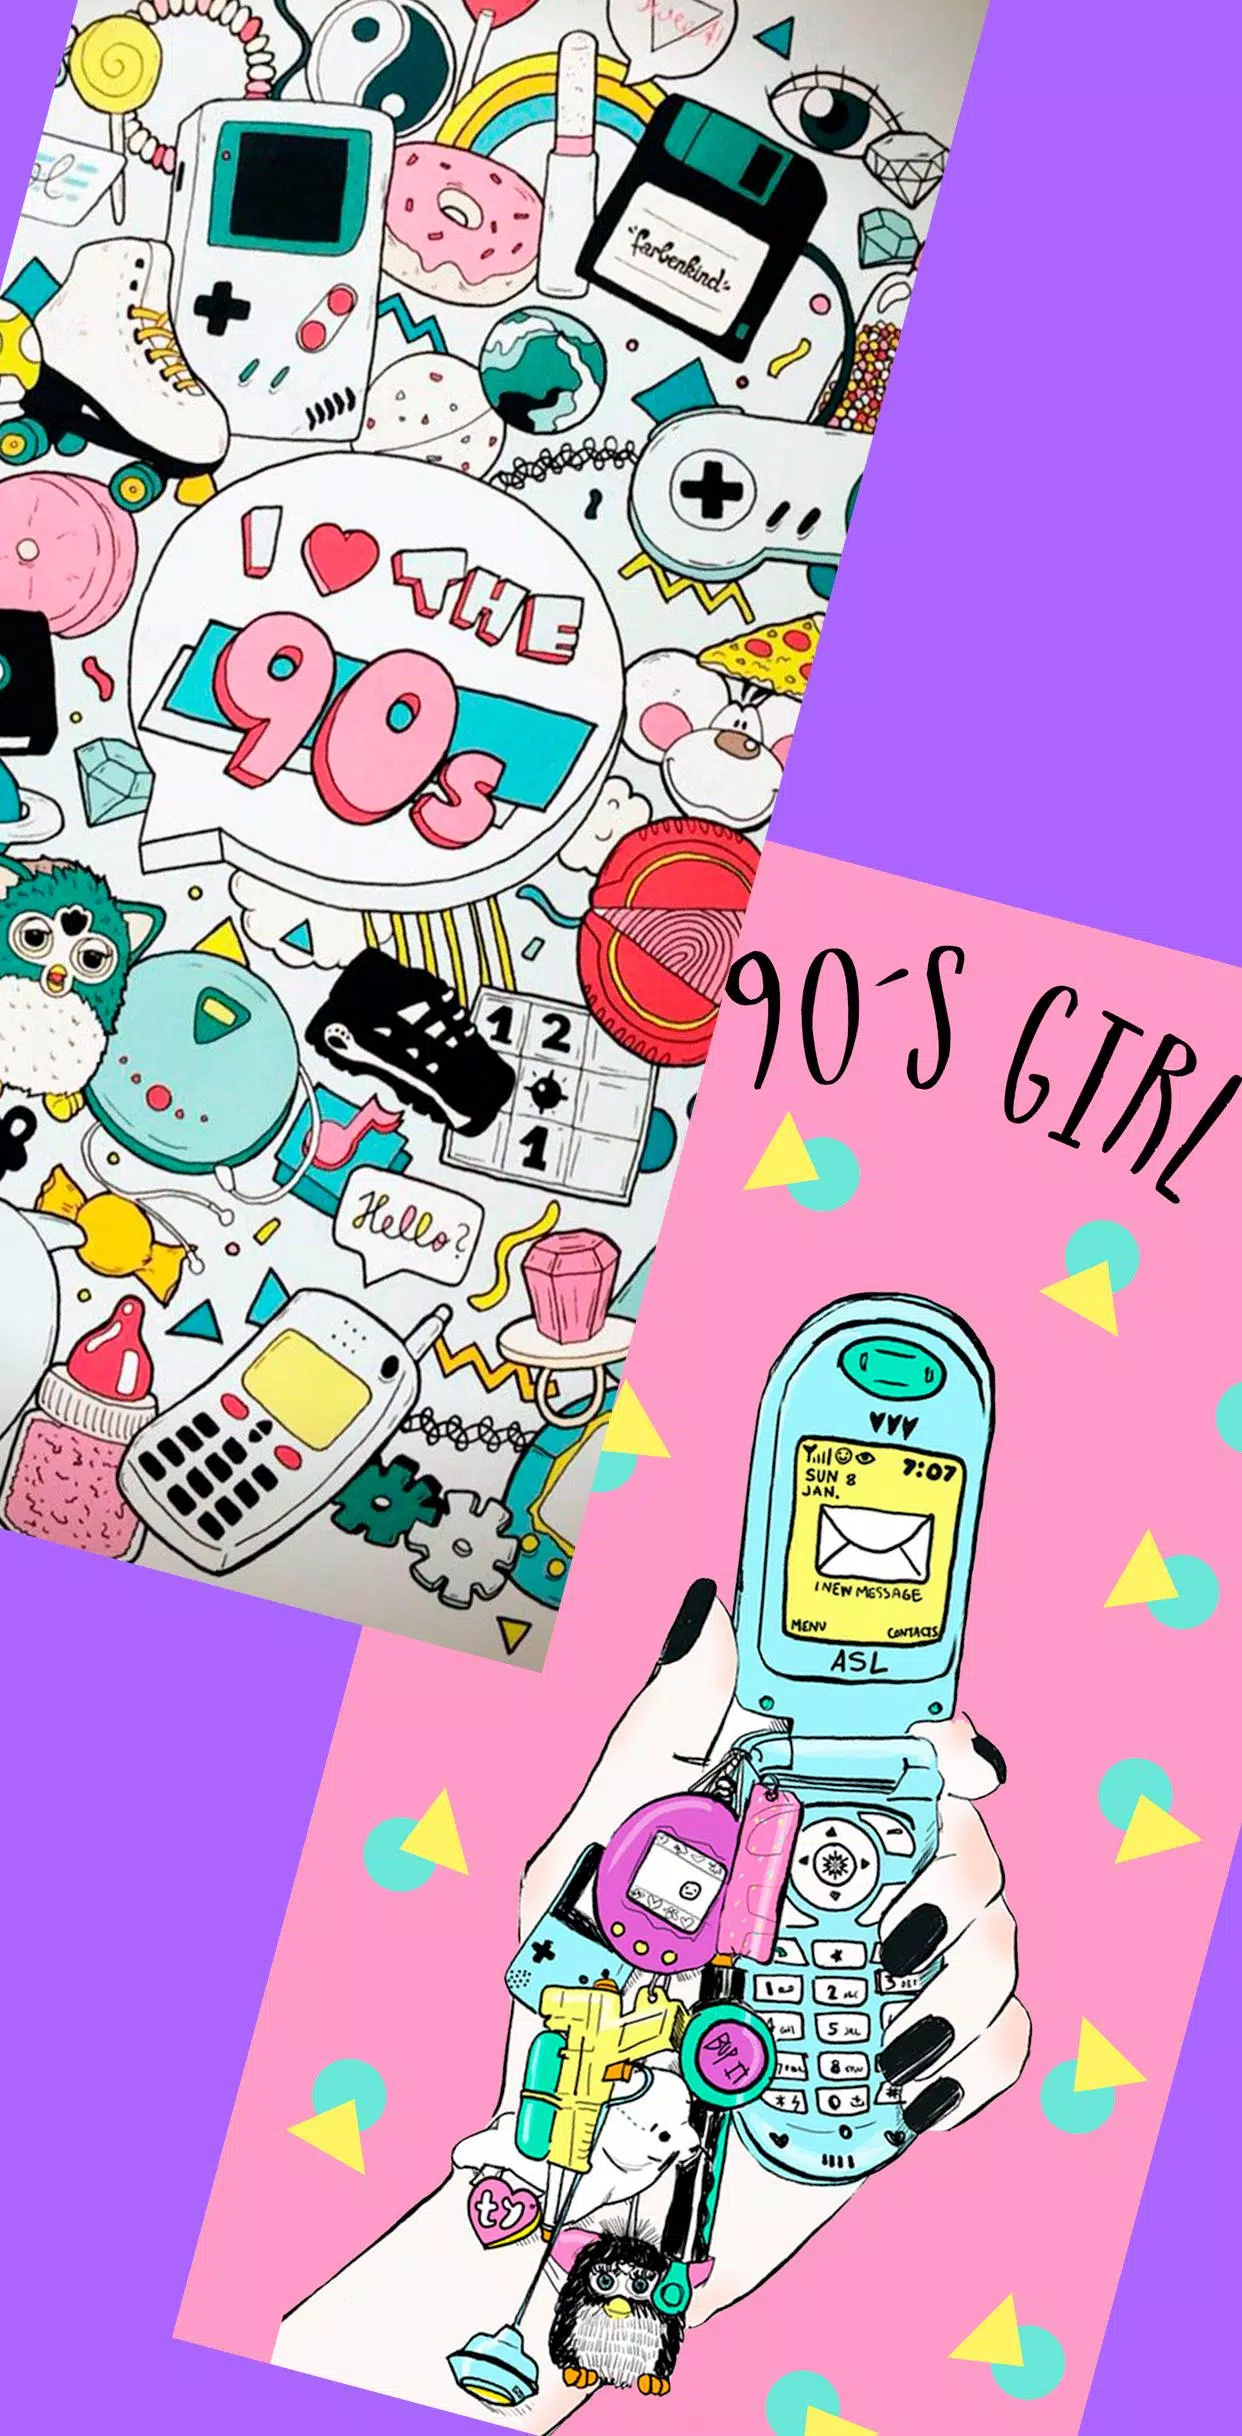 Iphone wallpaper for 90s girls. 2020 phone background - VSCO